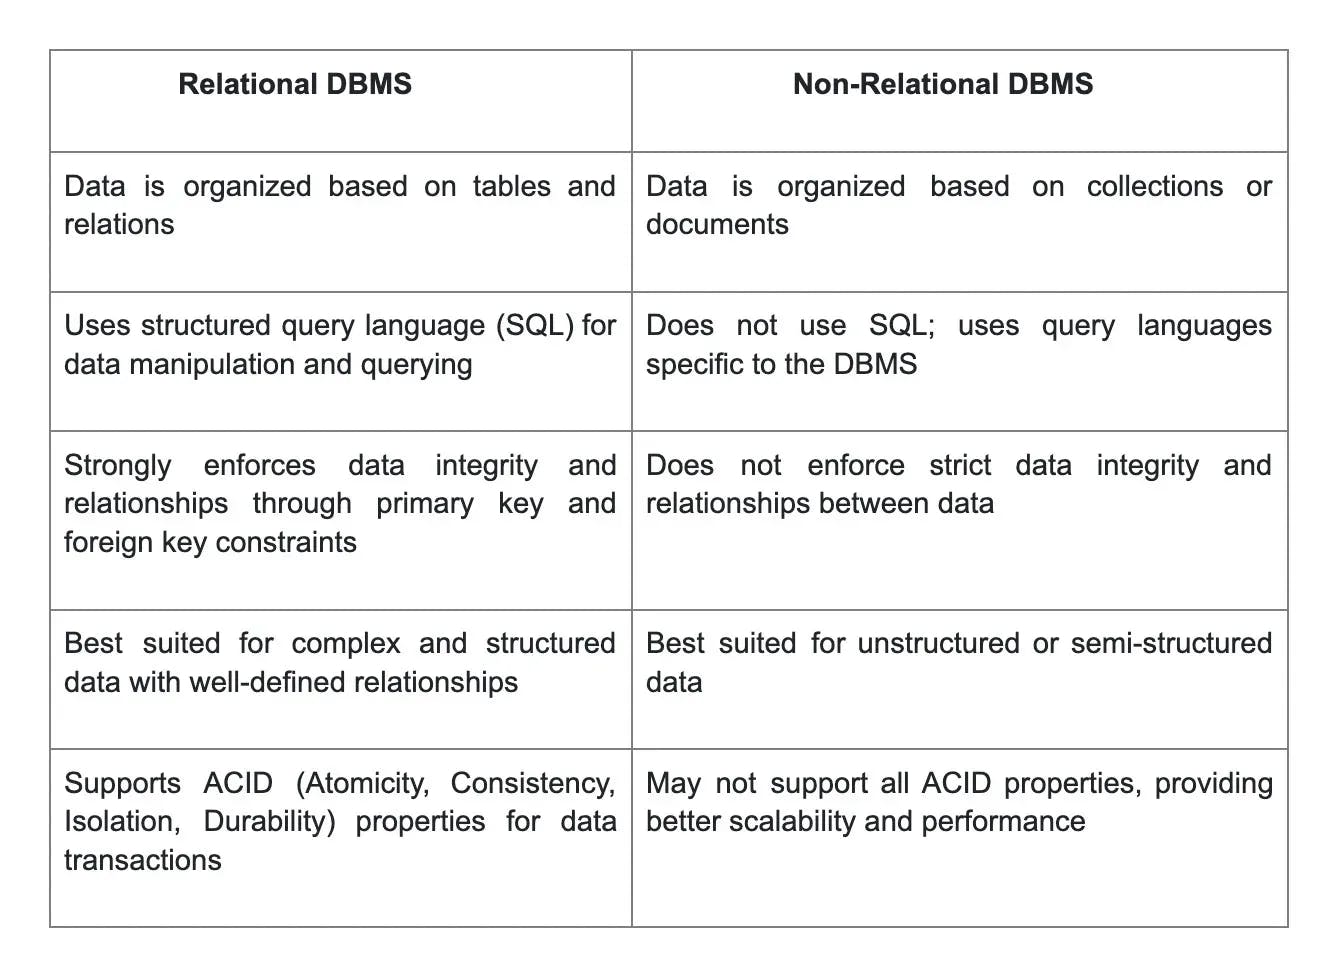 relational vs non-relational dbms.webp